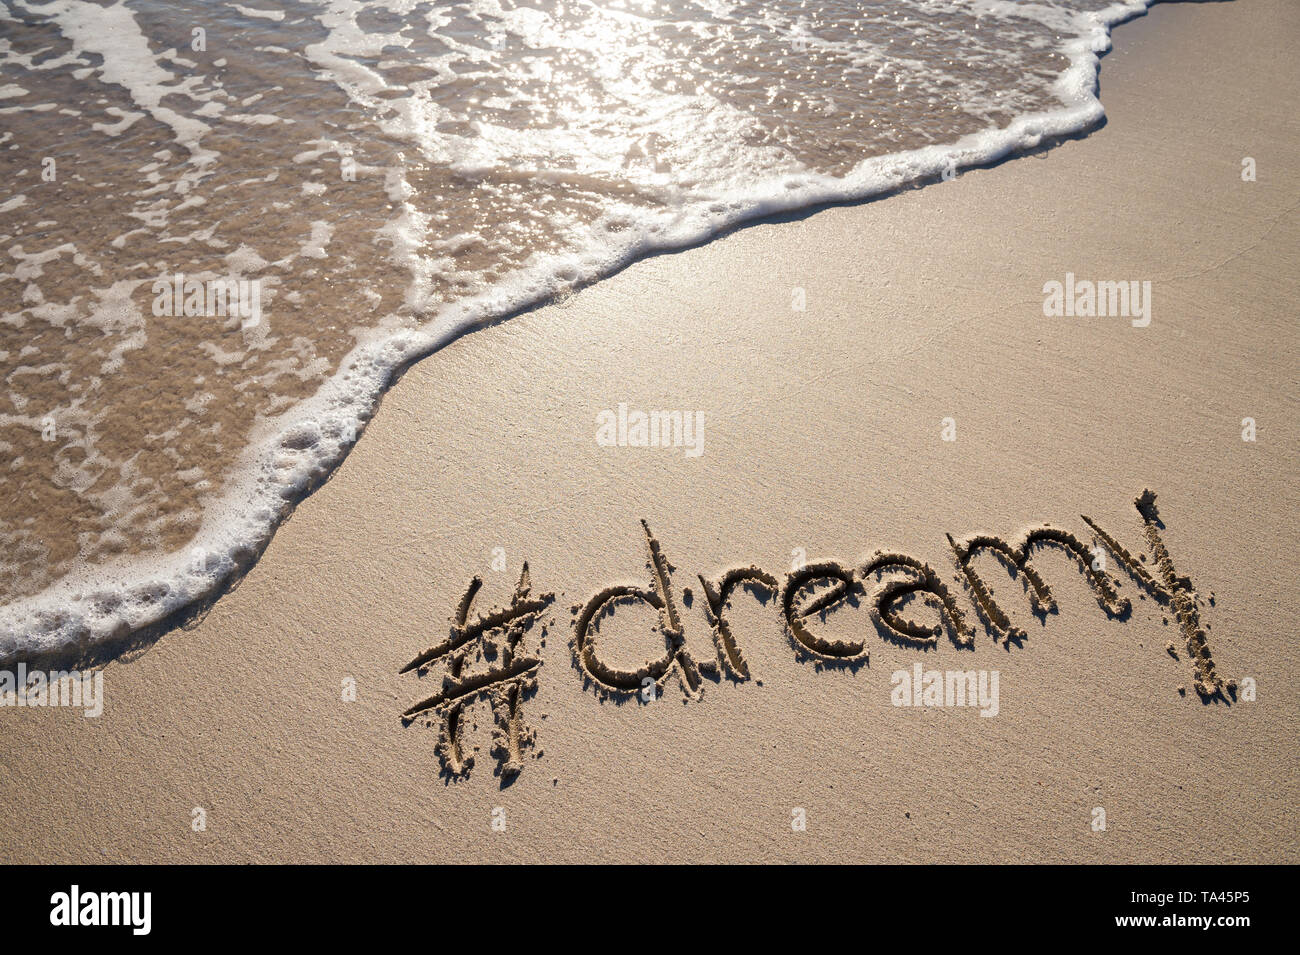 Moderne verträumt Nachricht für den Strand mit einem Social Media - freundliche hashtag in glatten Sand geschrieben mit ankommenden Welle Stockfoto